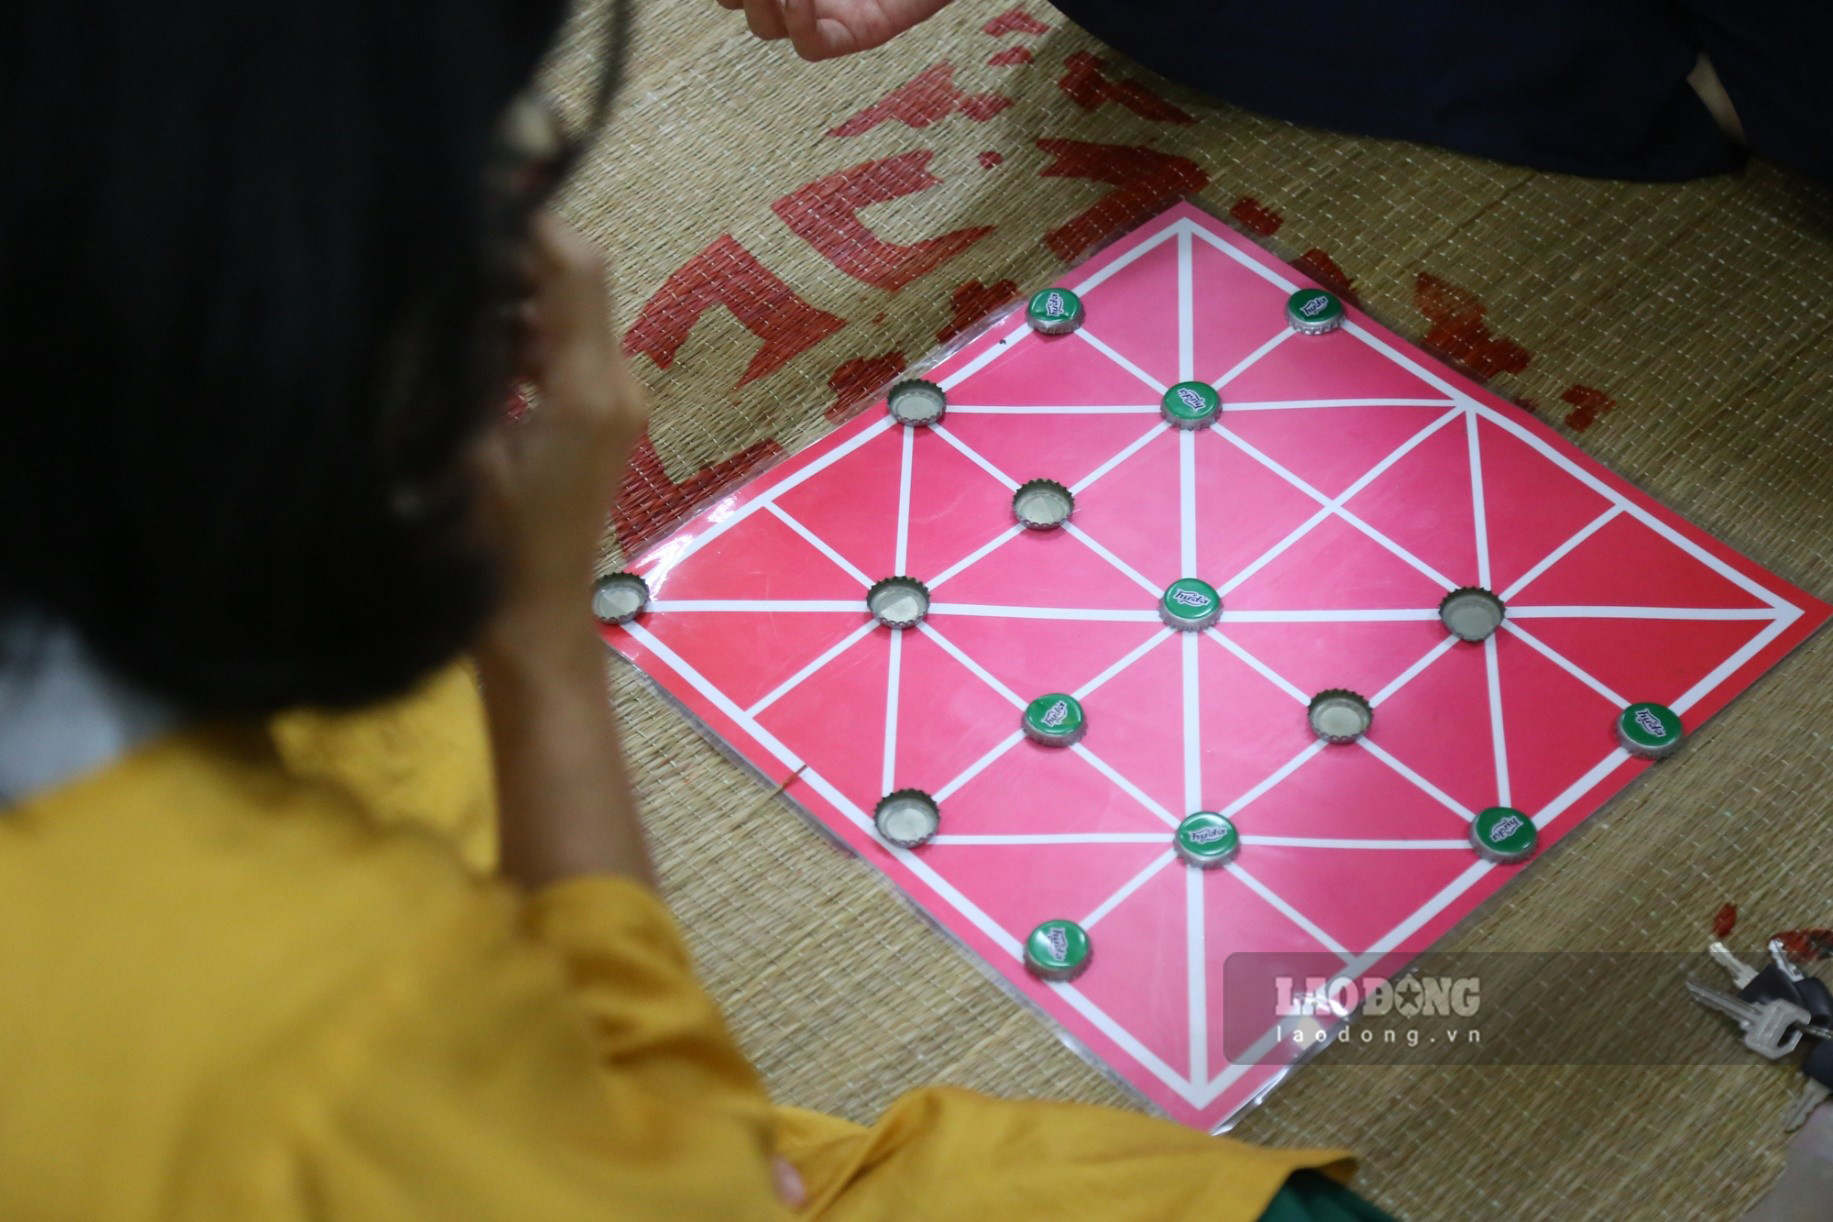 Trò chơi cờ Gánh, một trò chơi truyền thống có nguồn gốc từ Quảng Nam.